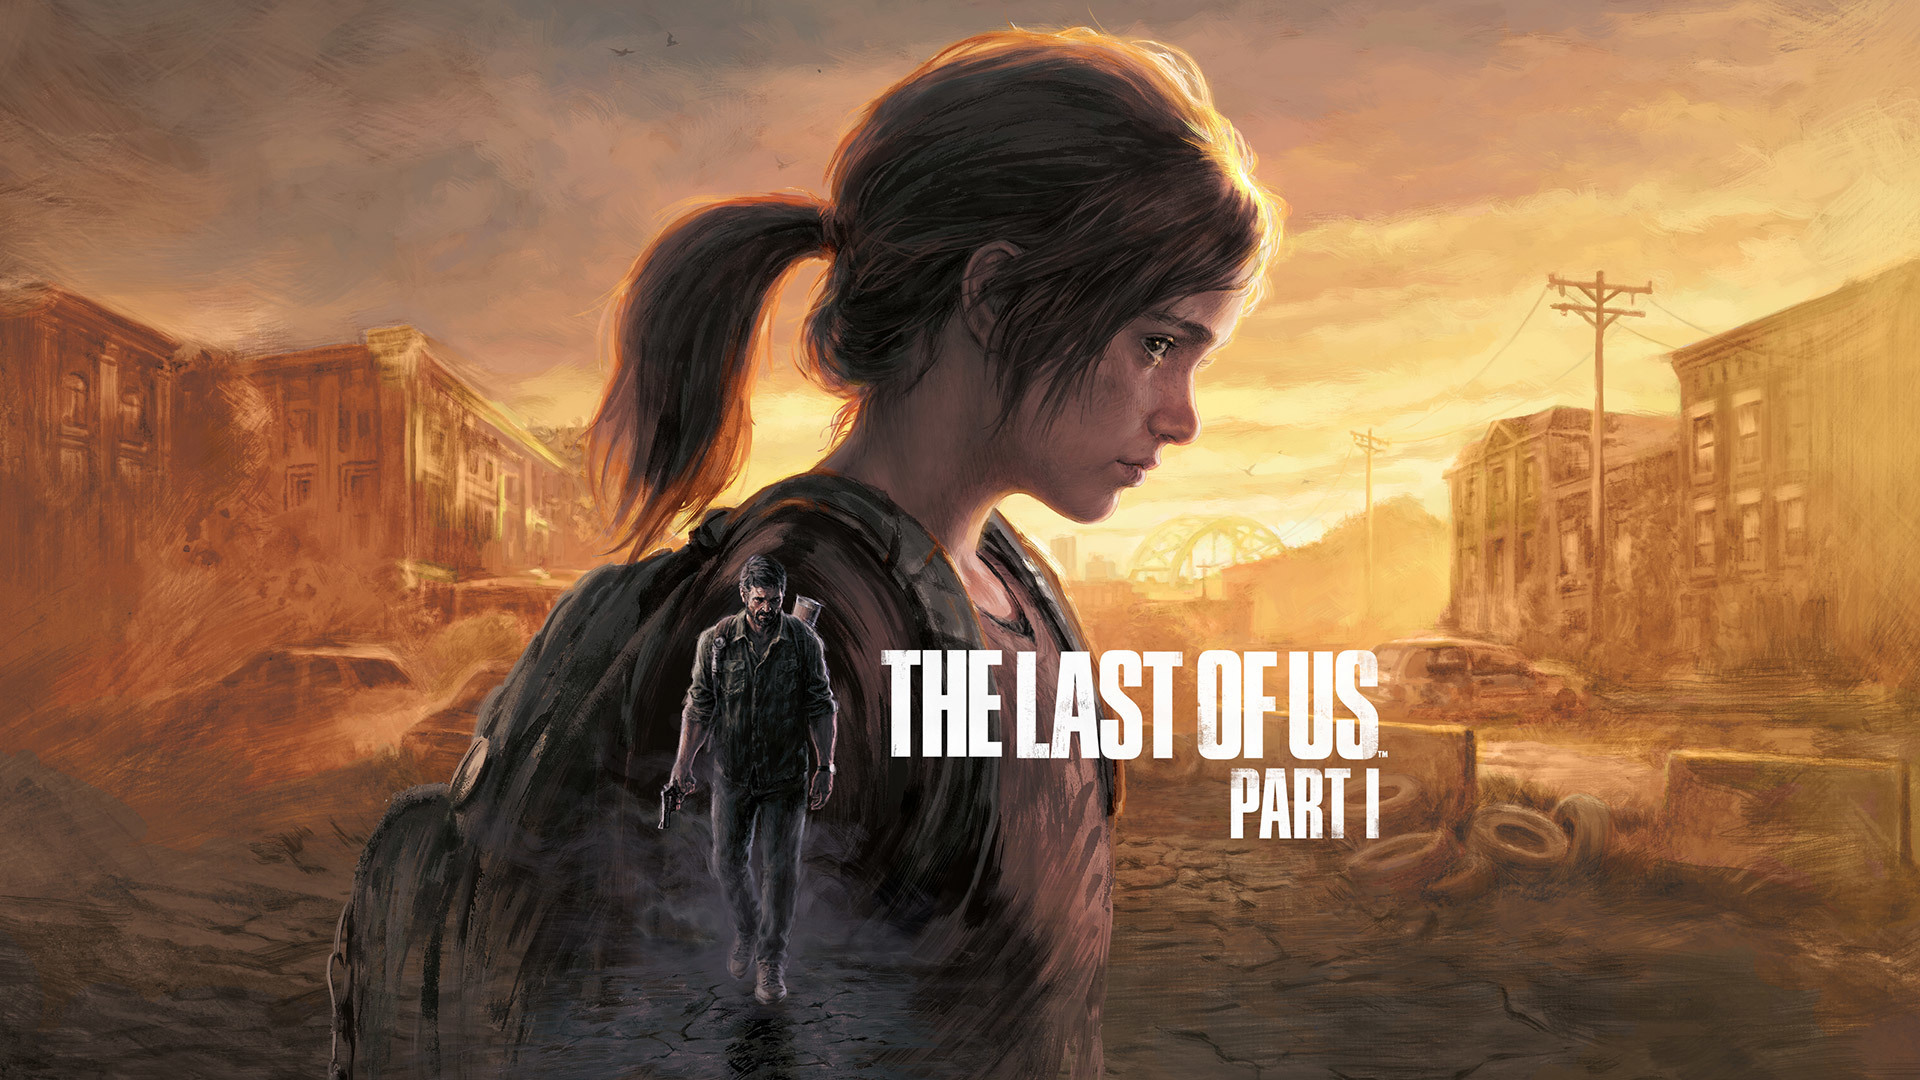 The Last of Us Part 1 - bản remake từ siêu phẩm năm 2013 sắp ra mắt trên PC